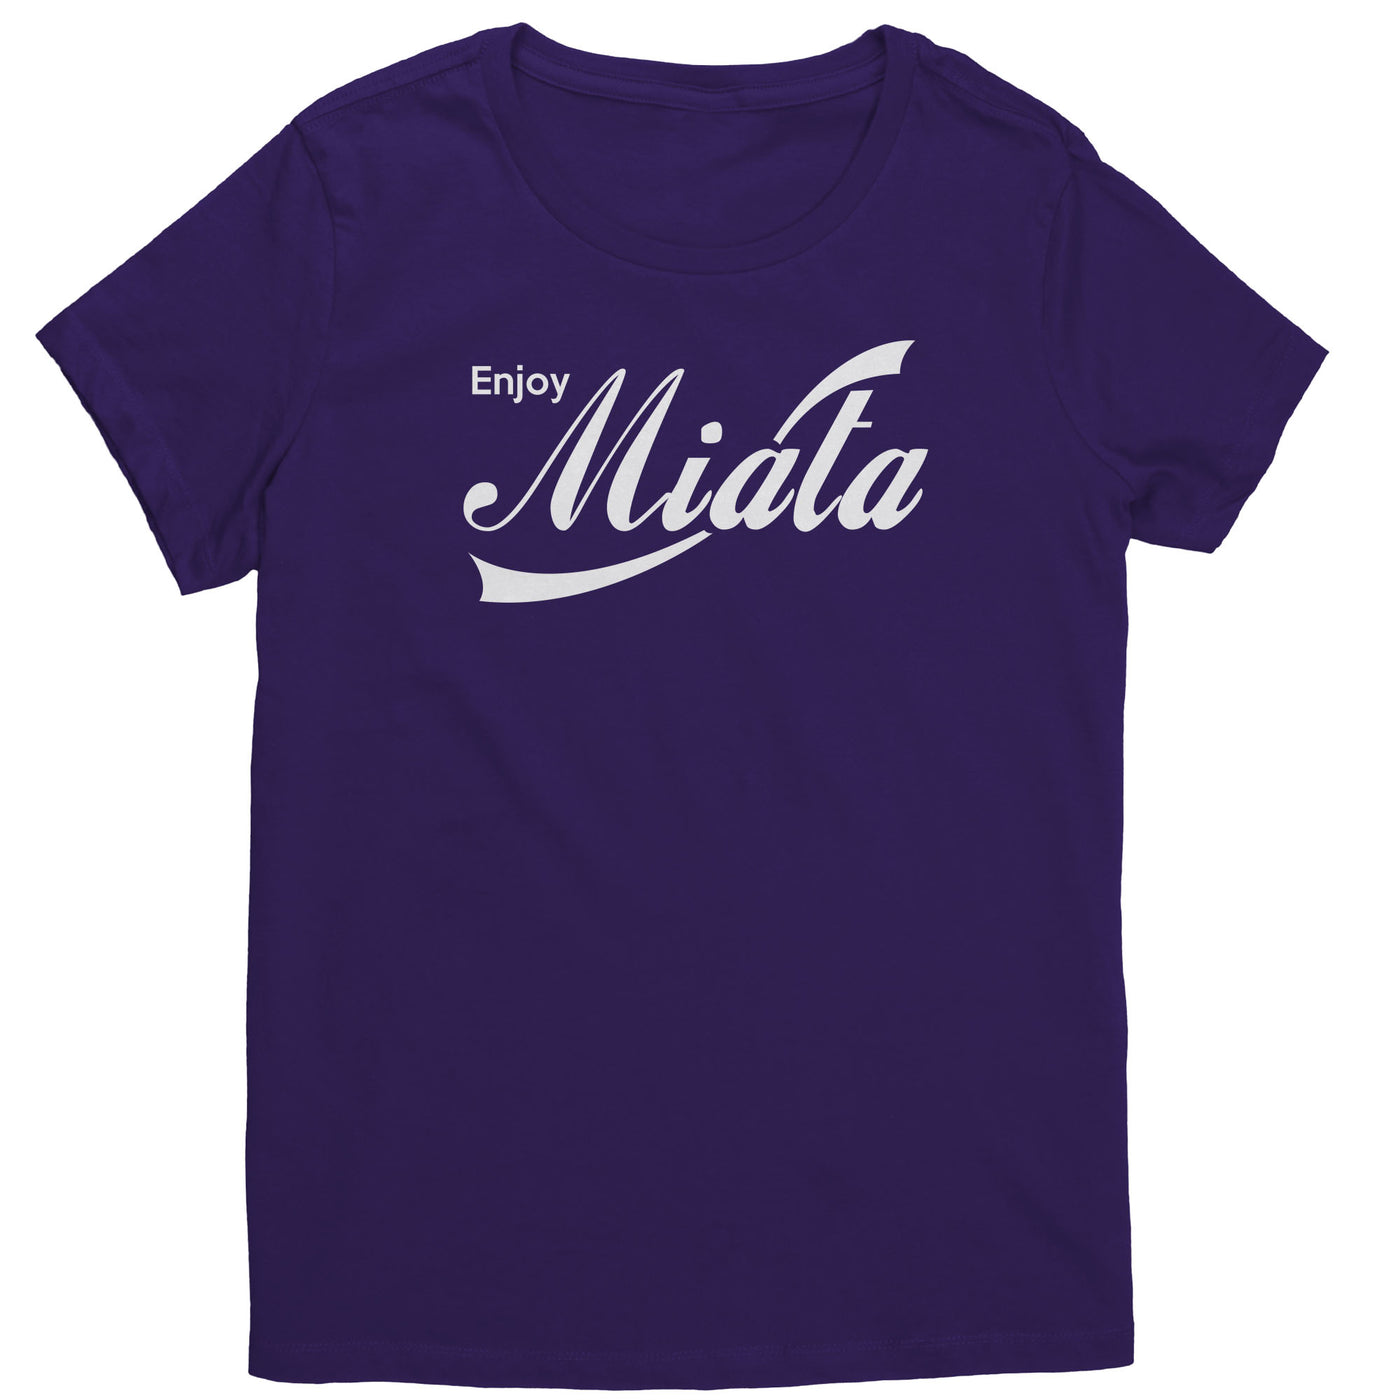 enjoy-miata-womens-shirt-purple